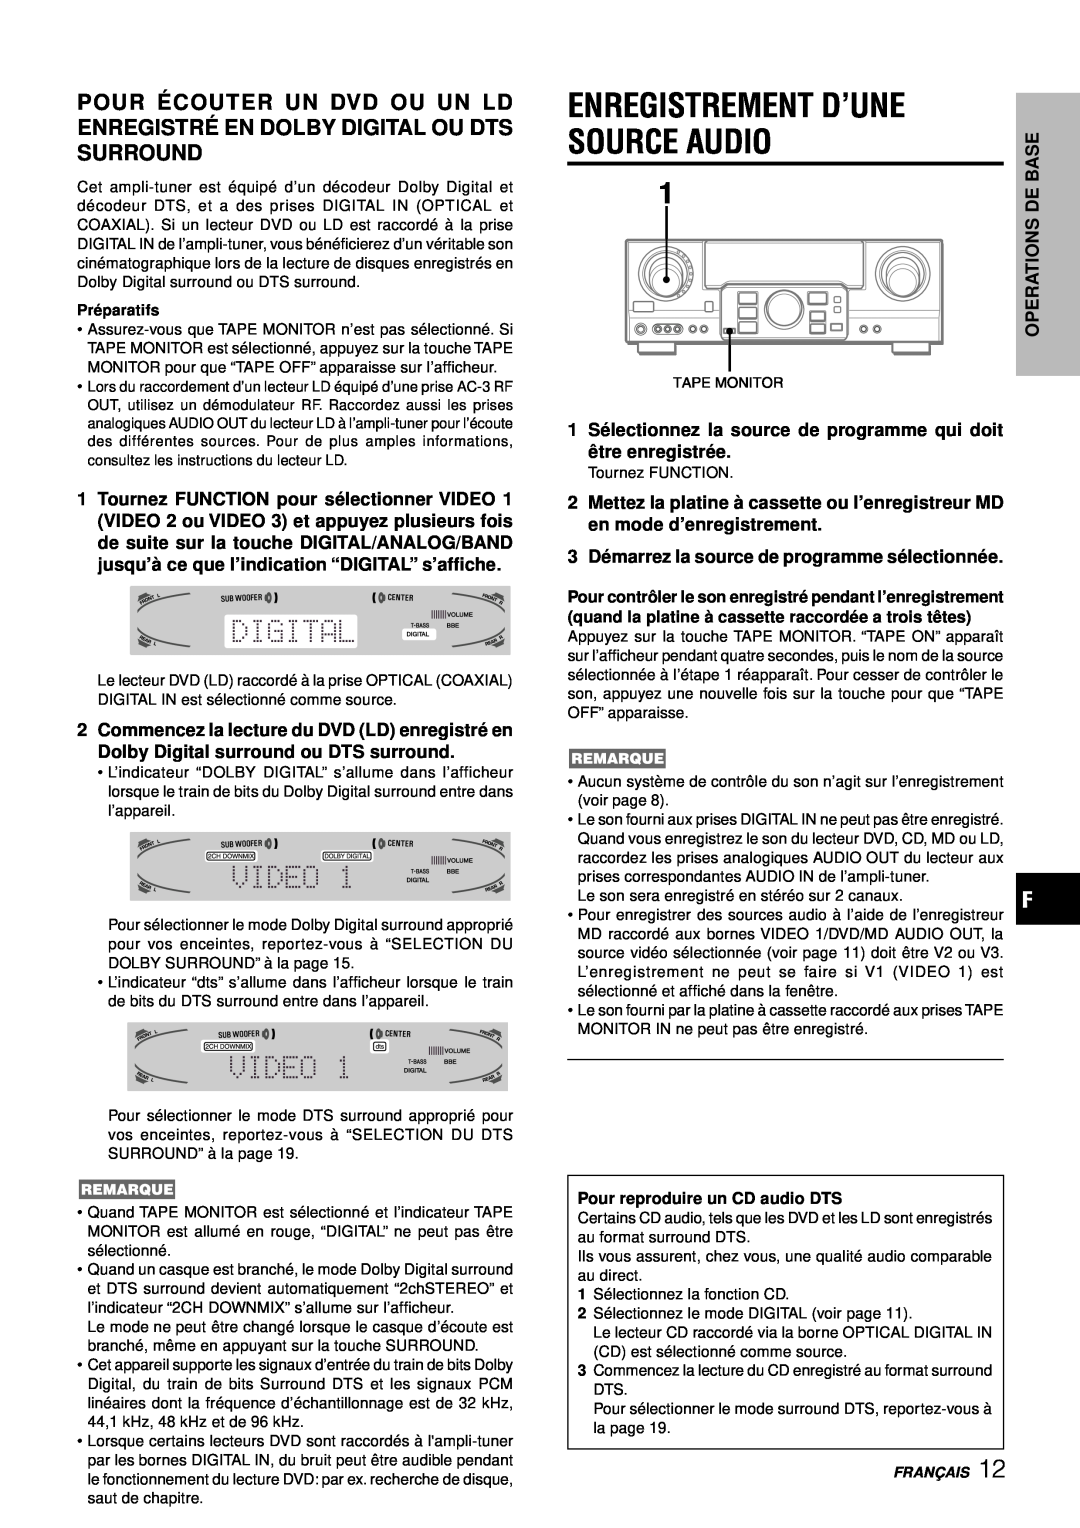 Aiwa AV-D97 manual Enregistrement D’Une, 1 Sé lectionnez la source de programme qui doit ê tre enregistré e 